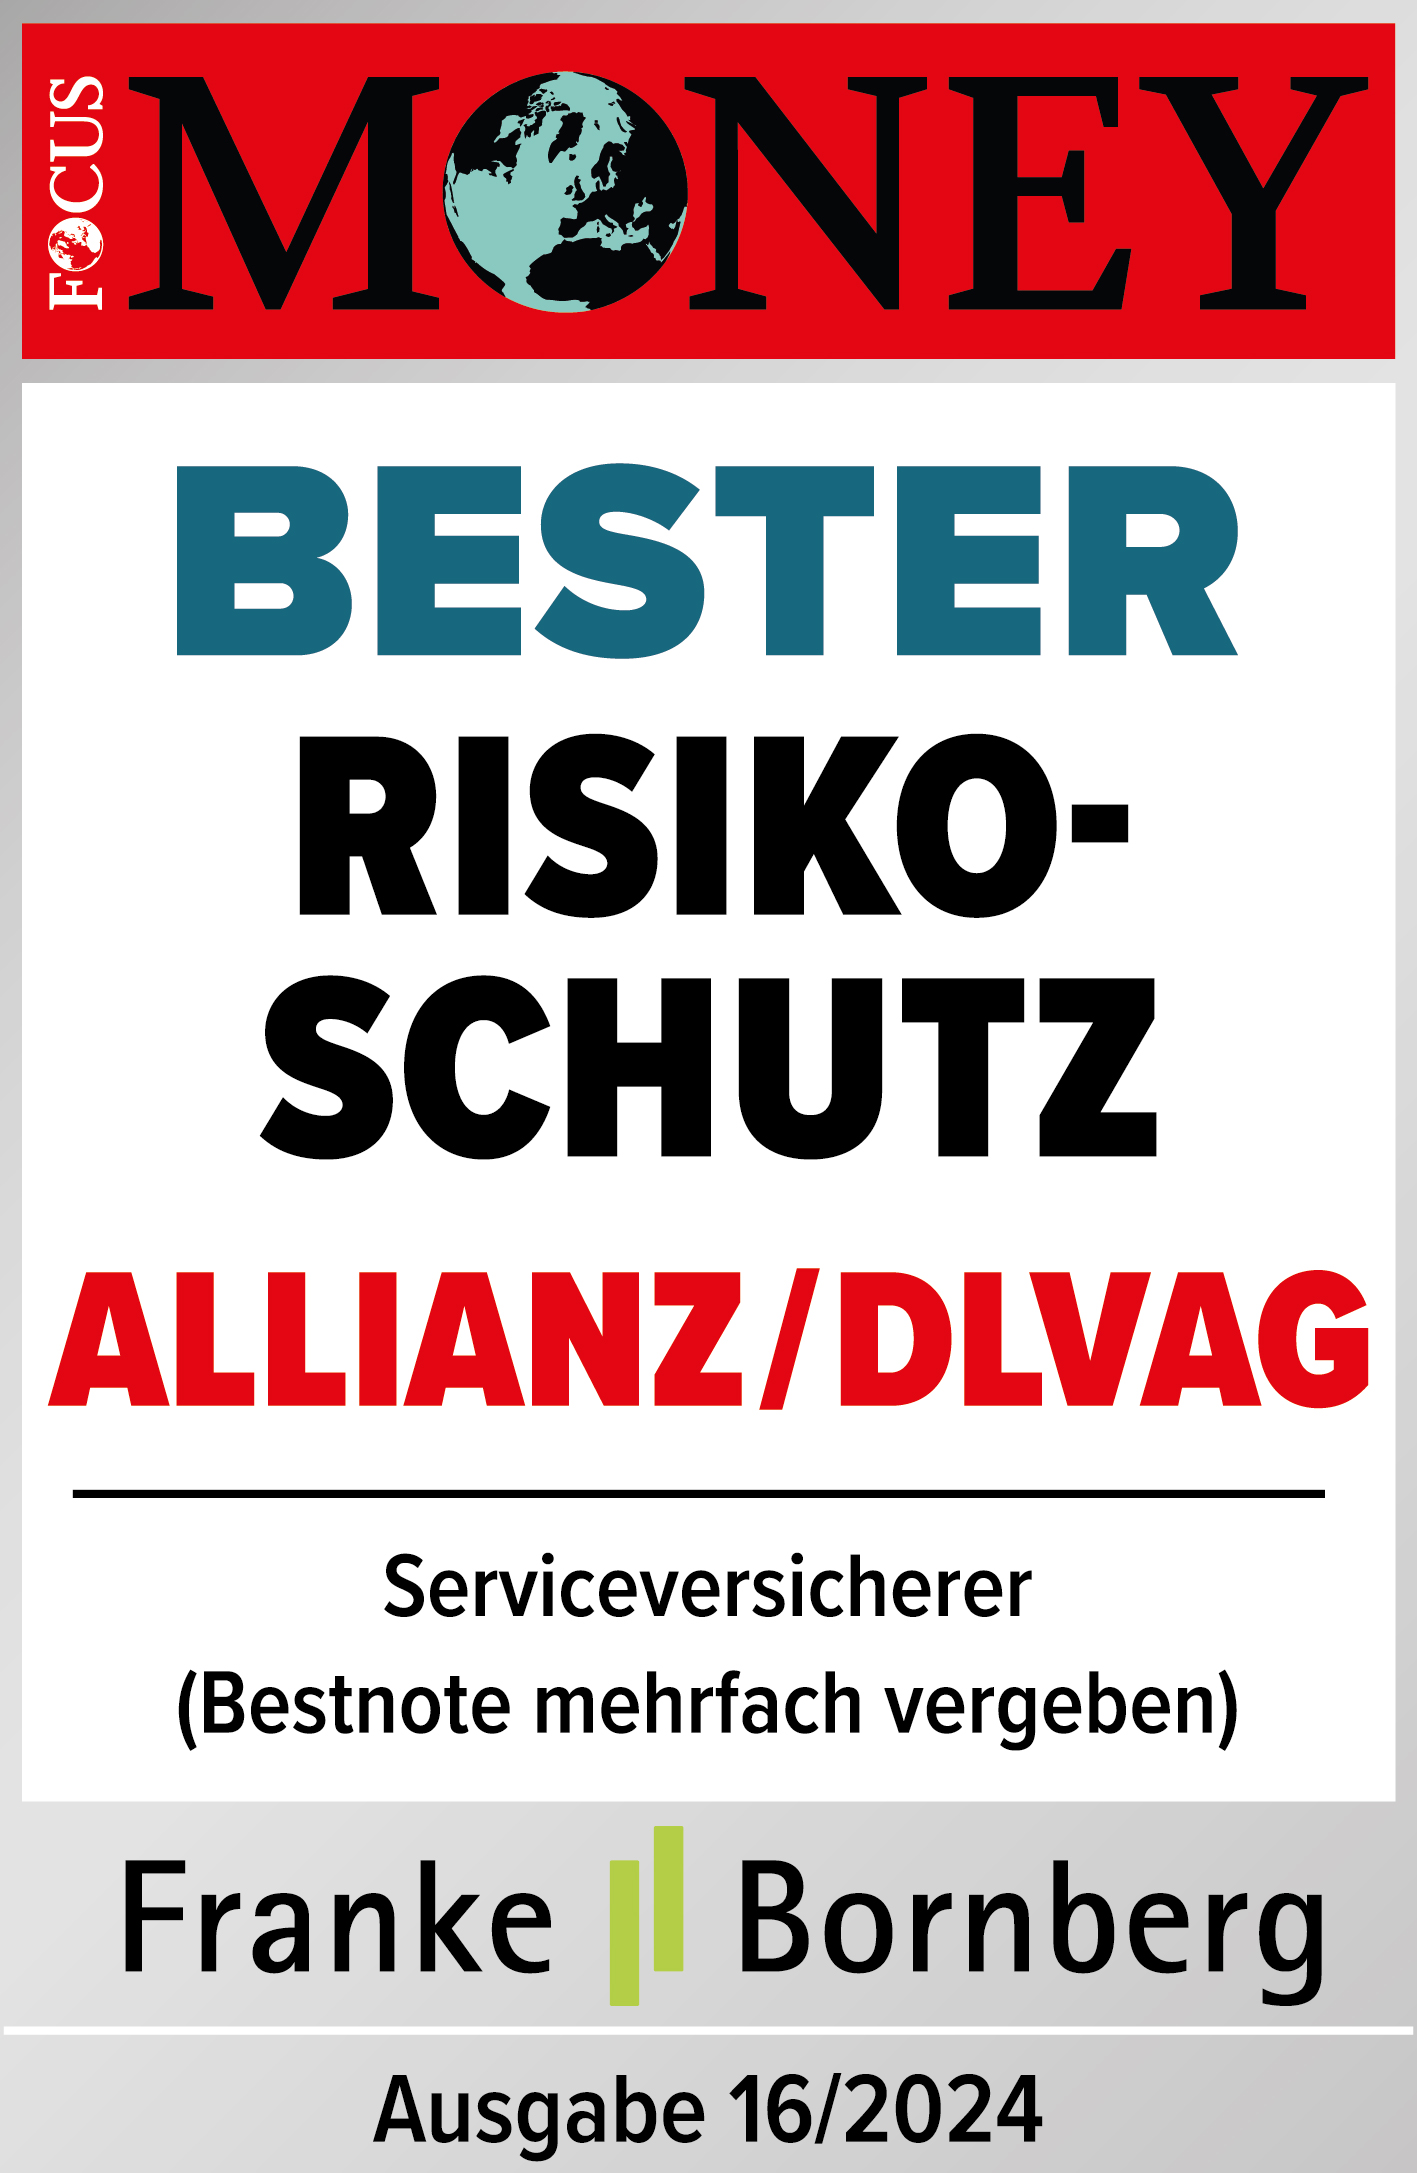 Testsiegel: Allianz Focus Money Bester Risikoschutz